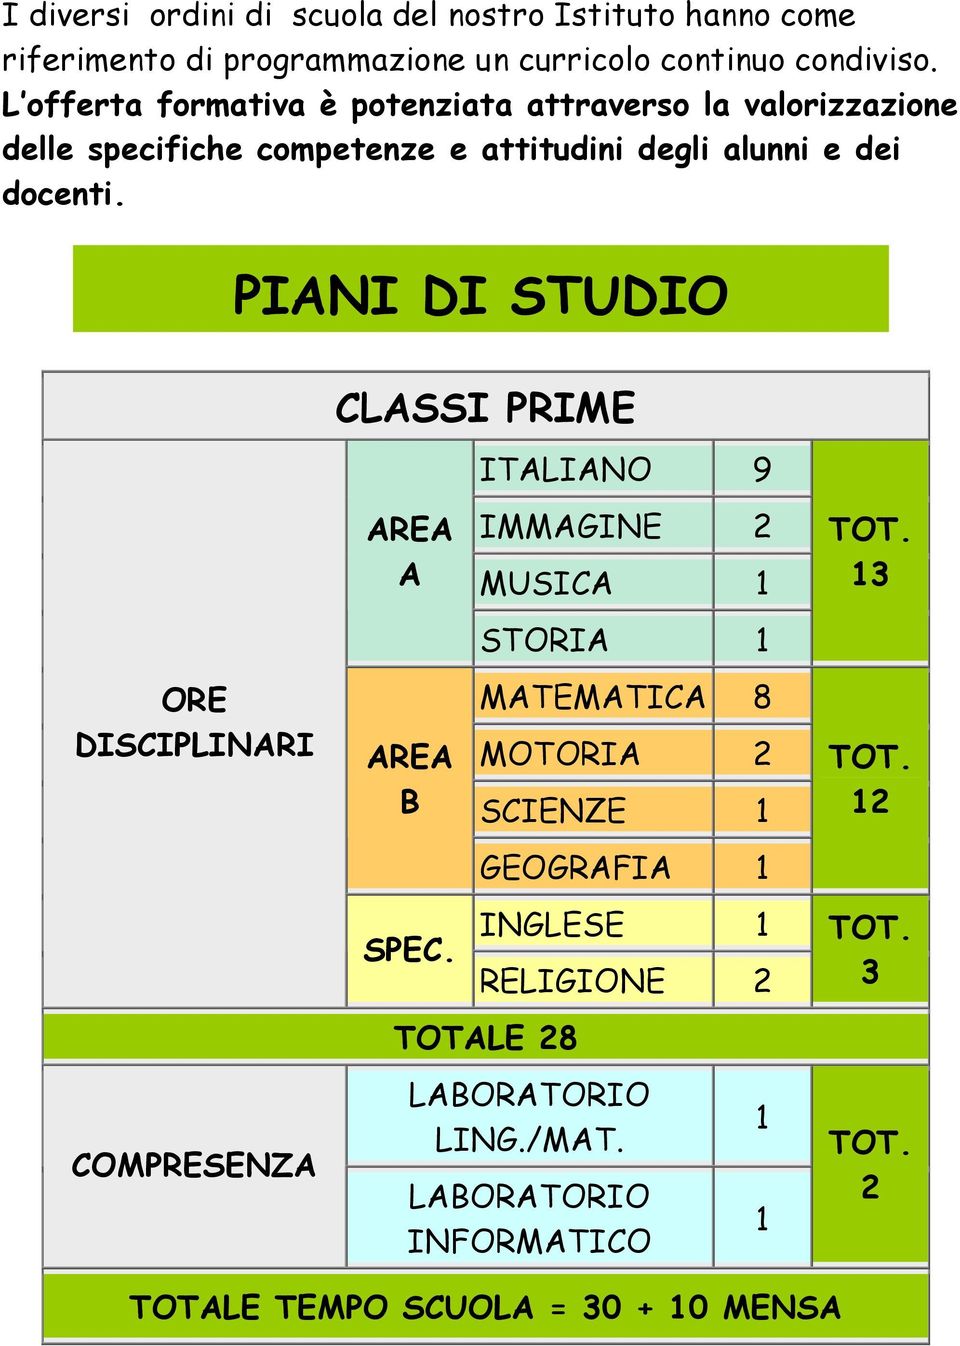 PIANI DI STUDIO ORE DISCIPLINARI COMPRESENZA CLASSI PRIME AREA A AREA B ITALIANO 9 IMMAGINE 2 MUSICA 1 STORIA 1 MATEMATICA 8 MOTORIA 2